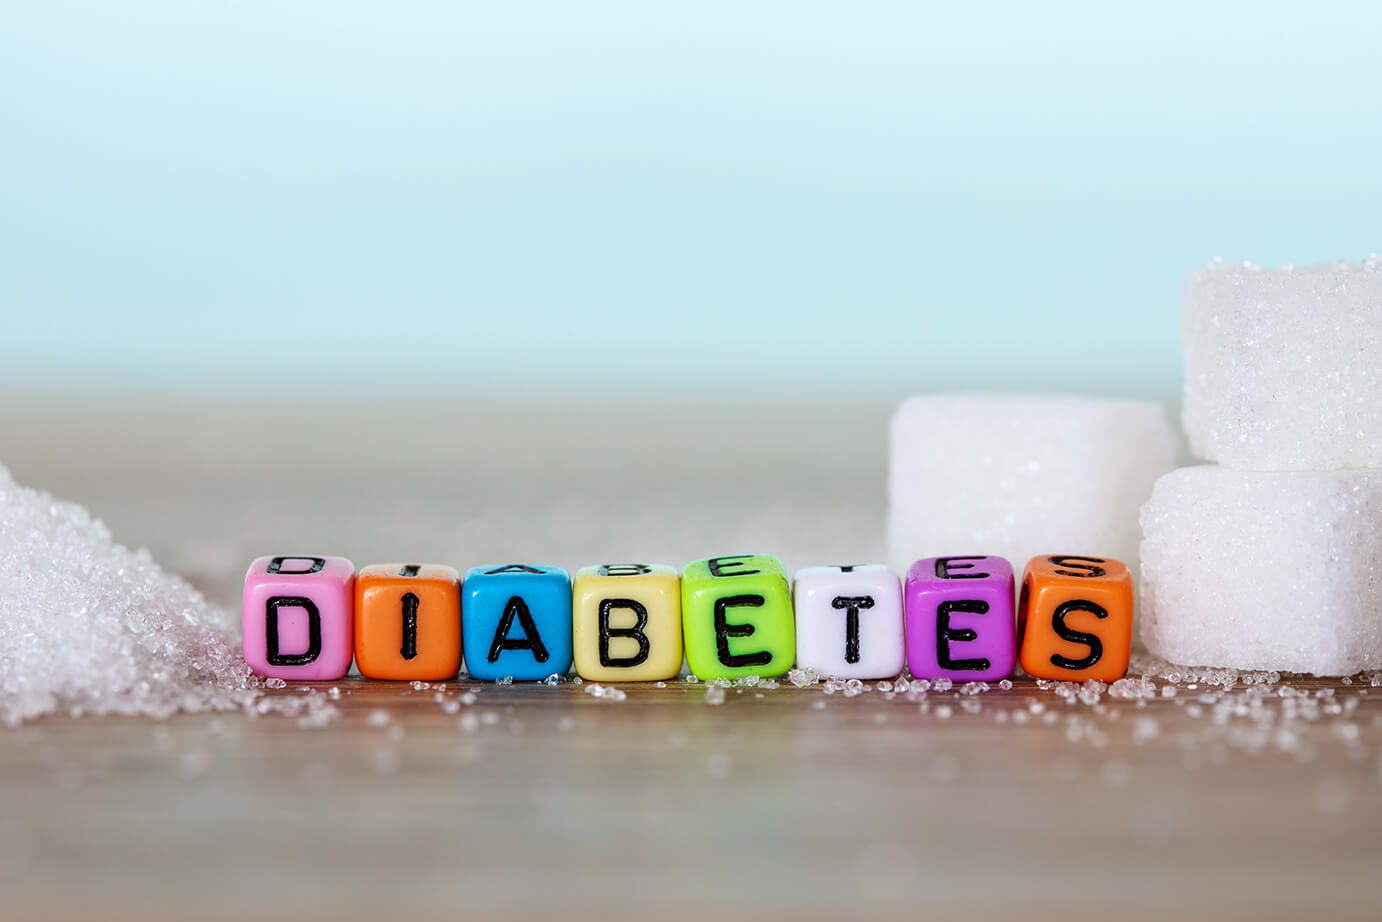 ¿Qué es la Diabetes?